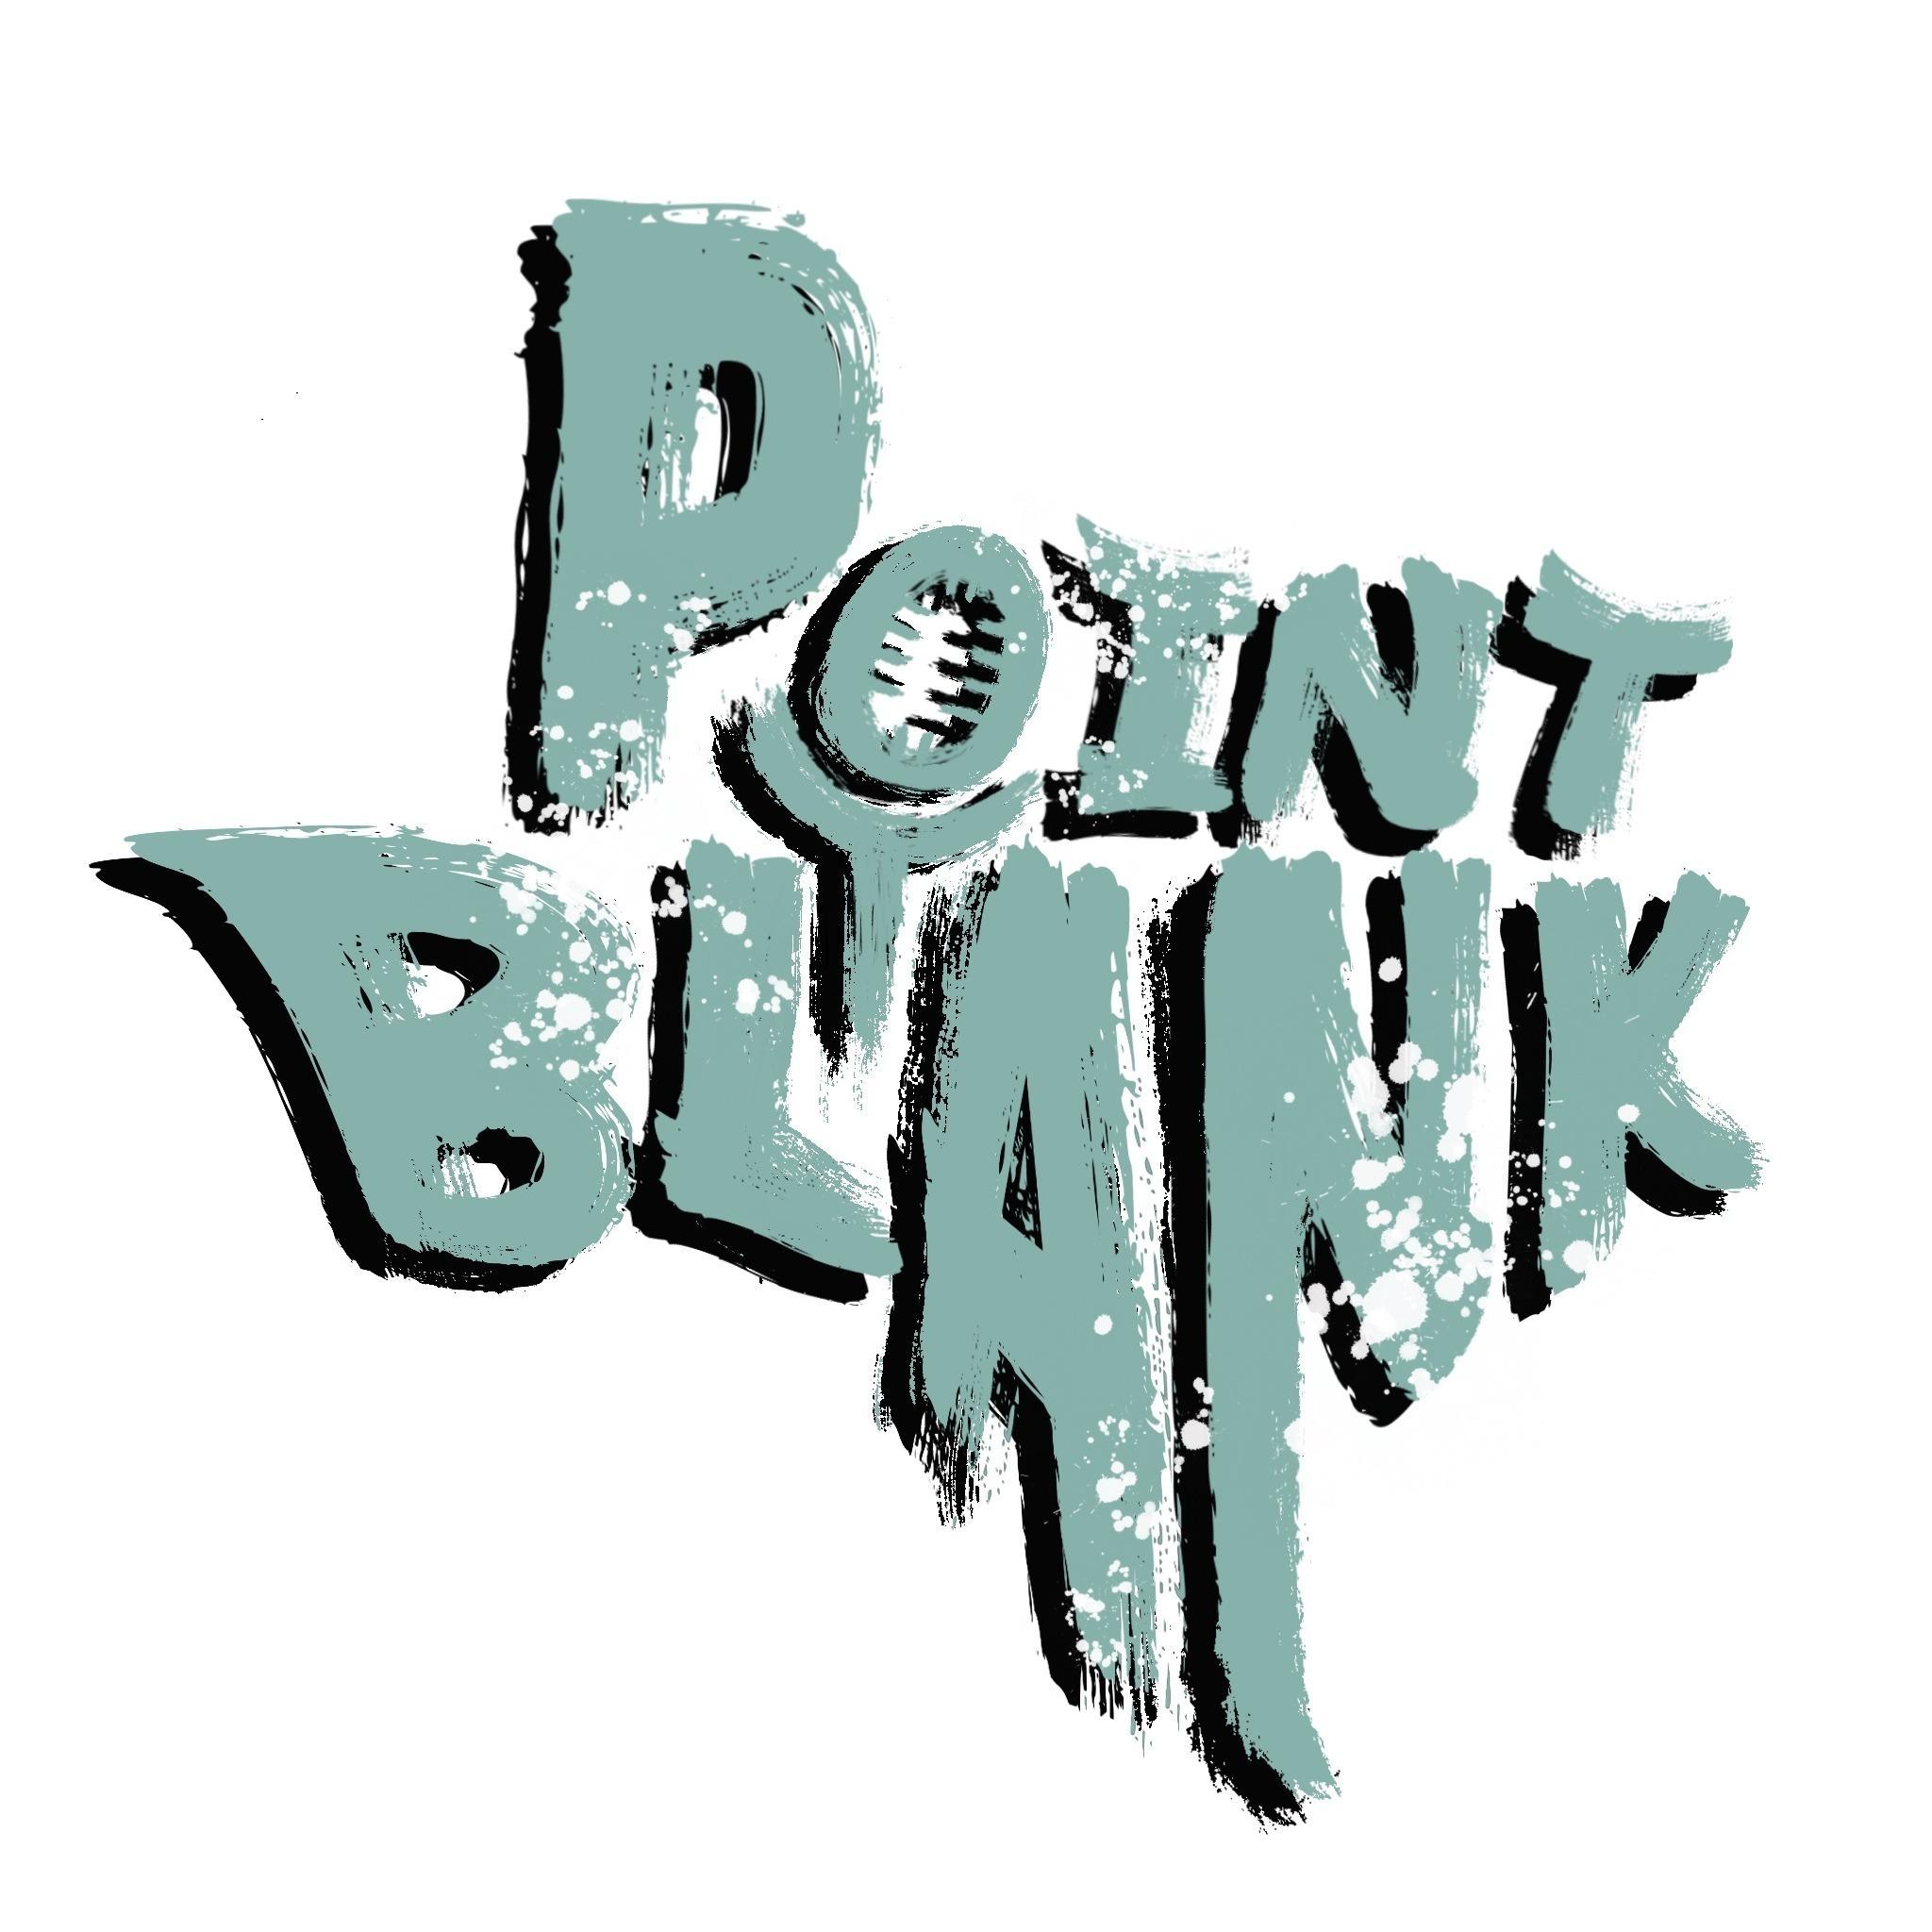 Point Blank, Texas